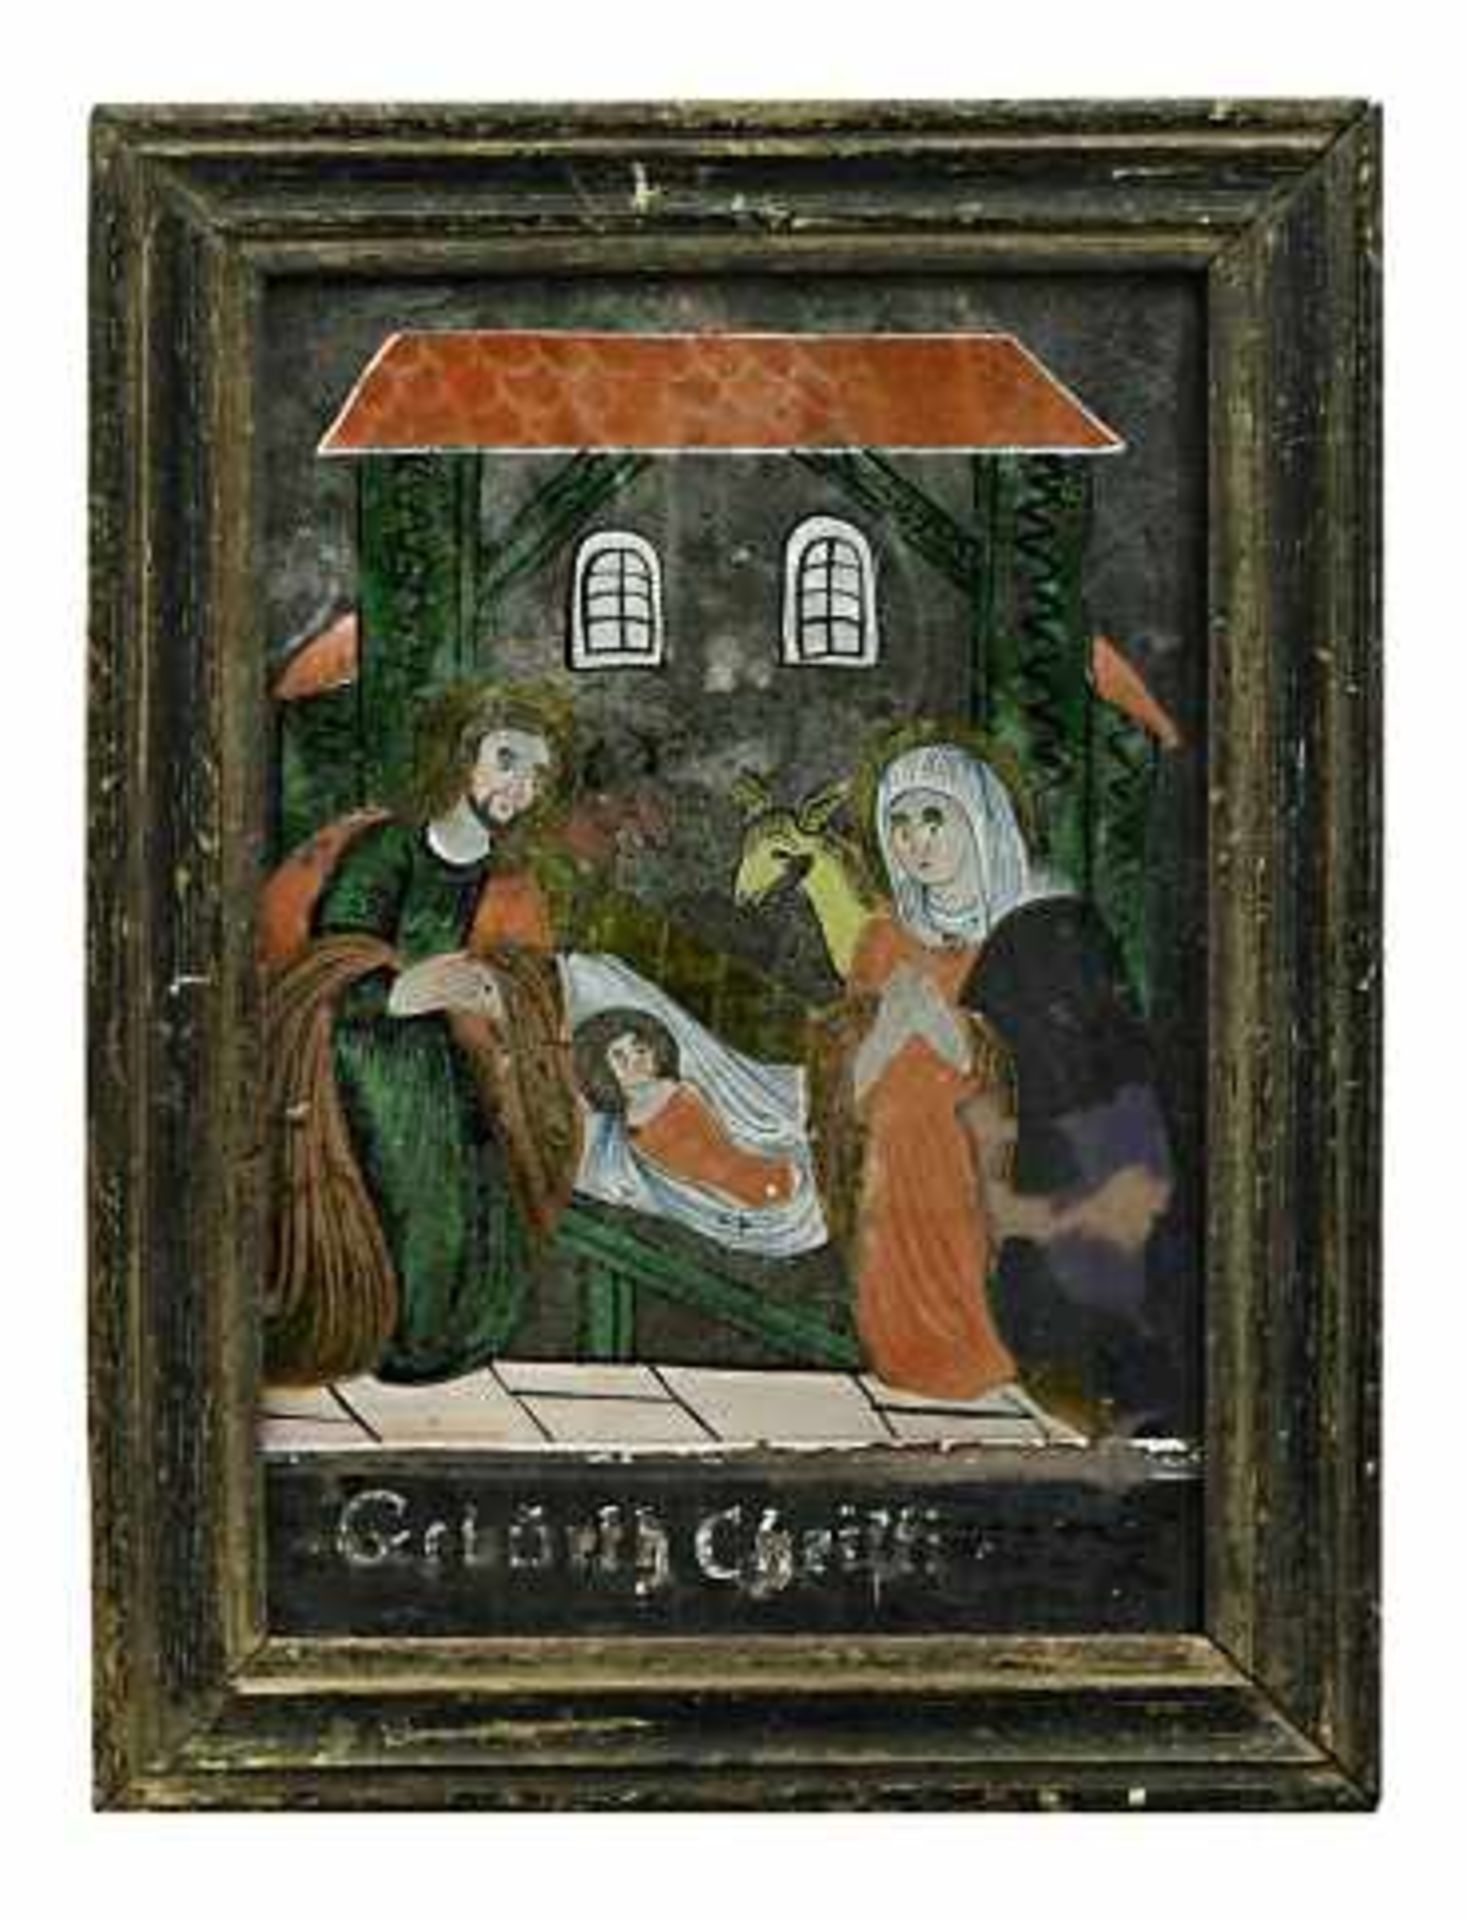 Hinterglas-Spiegelbild: Geburt ChristiBuchers oder Sandl, 19. Jh. Unterhalb der Darstellung in